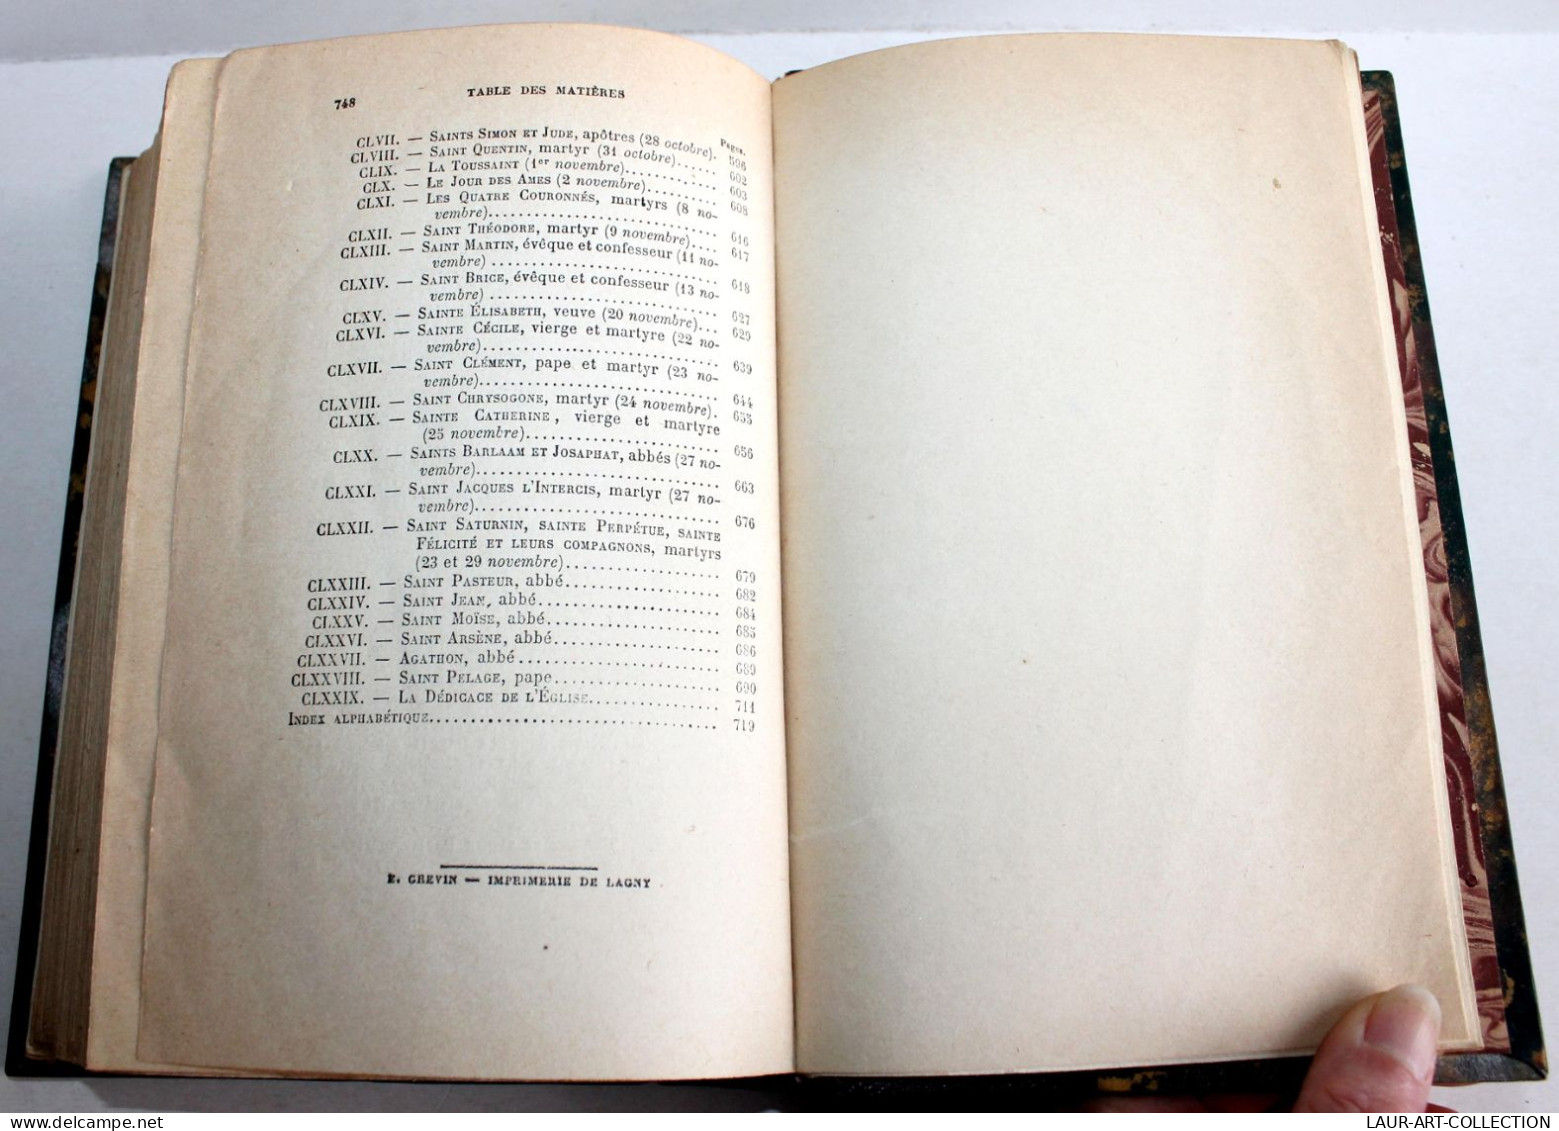 LA LEGENDE DOREE, J. DE VORAGINE, TRADUITE DU LATIN par T. DE WYZEWA 1917 PERRIN / ANCIEN LIVRE XXe SIECLE (2603.11)